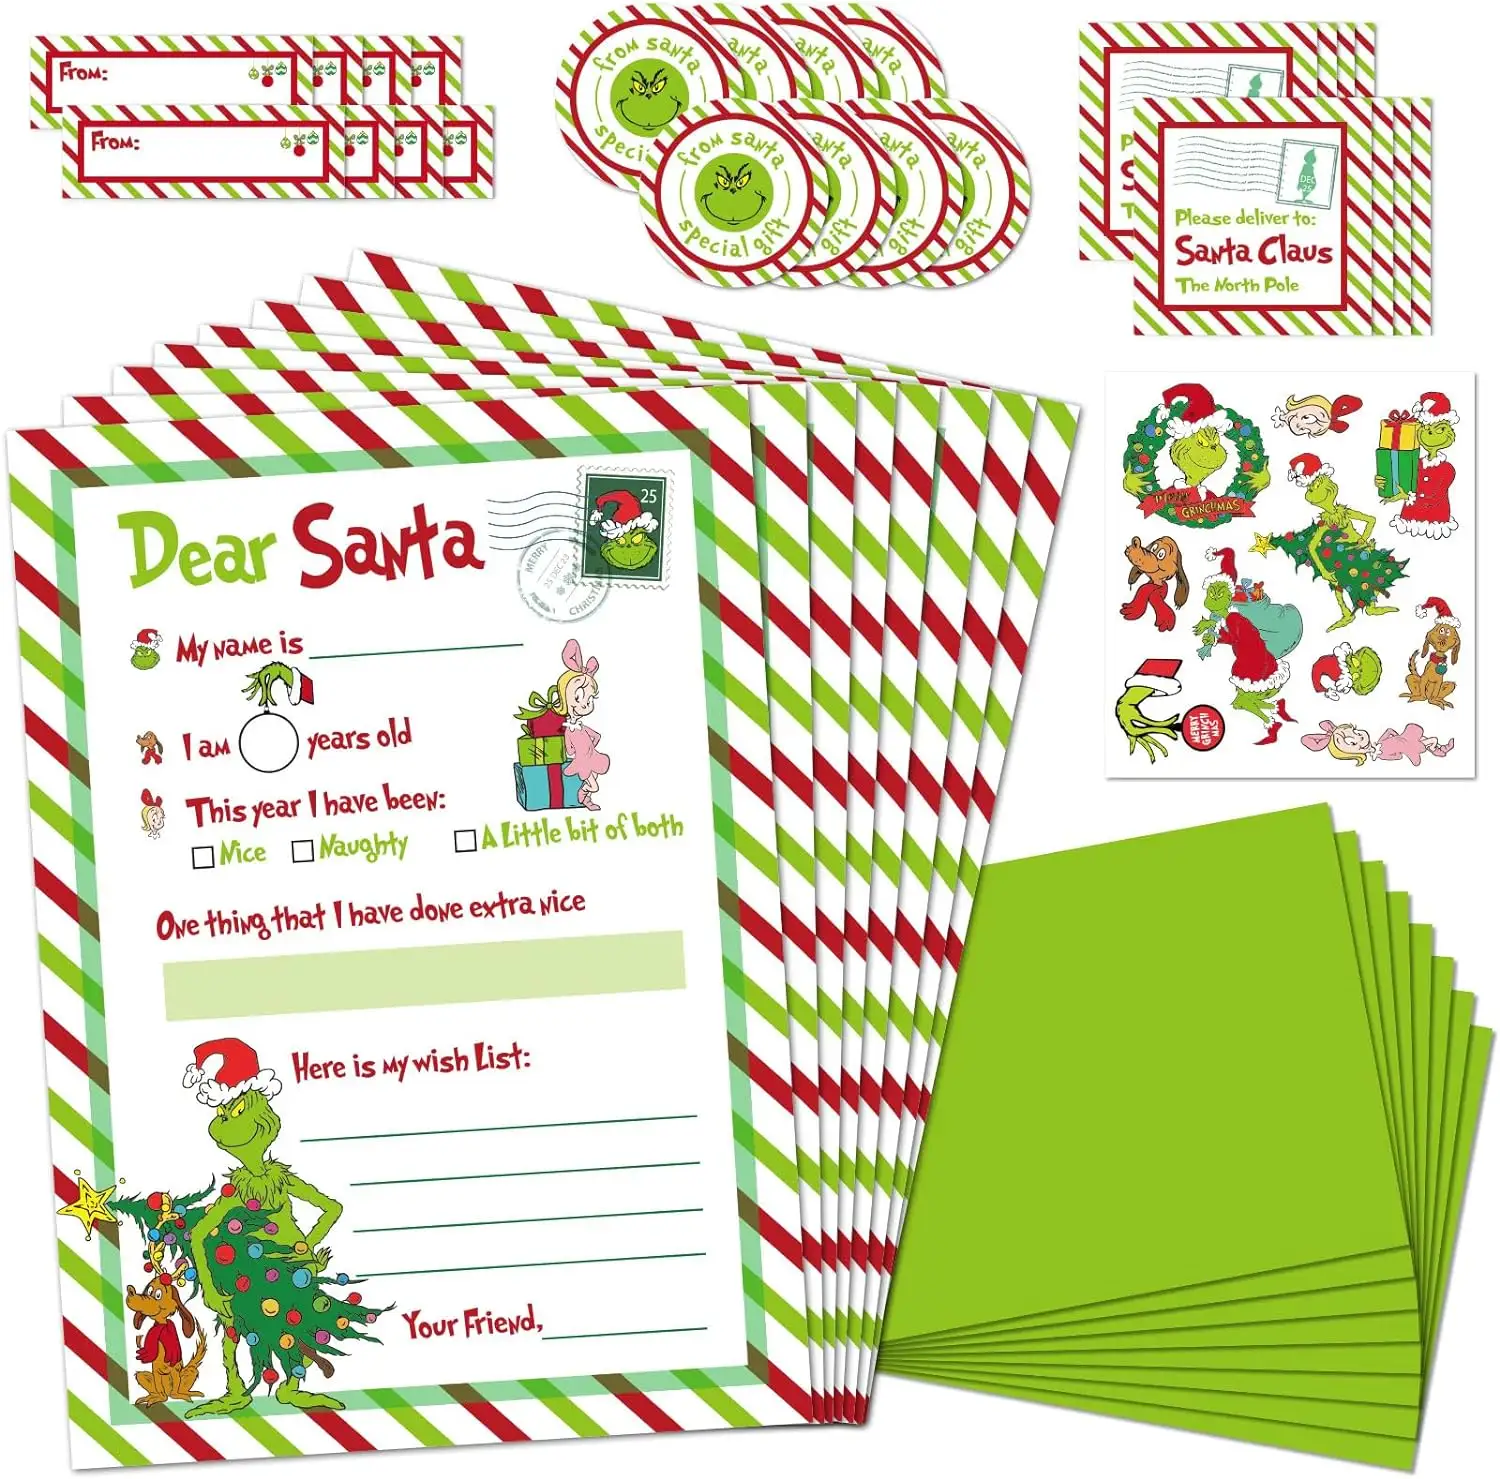 Thư cho Santa kit, Bộ thư Santa chính thức cho Giáng sinh điền vào các thẻ trống với phong bì/nhãn dán màu xanh lá cây